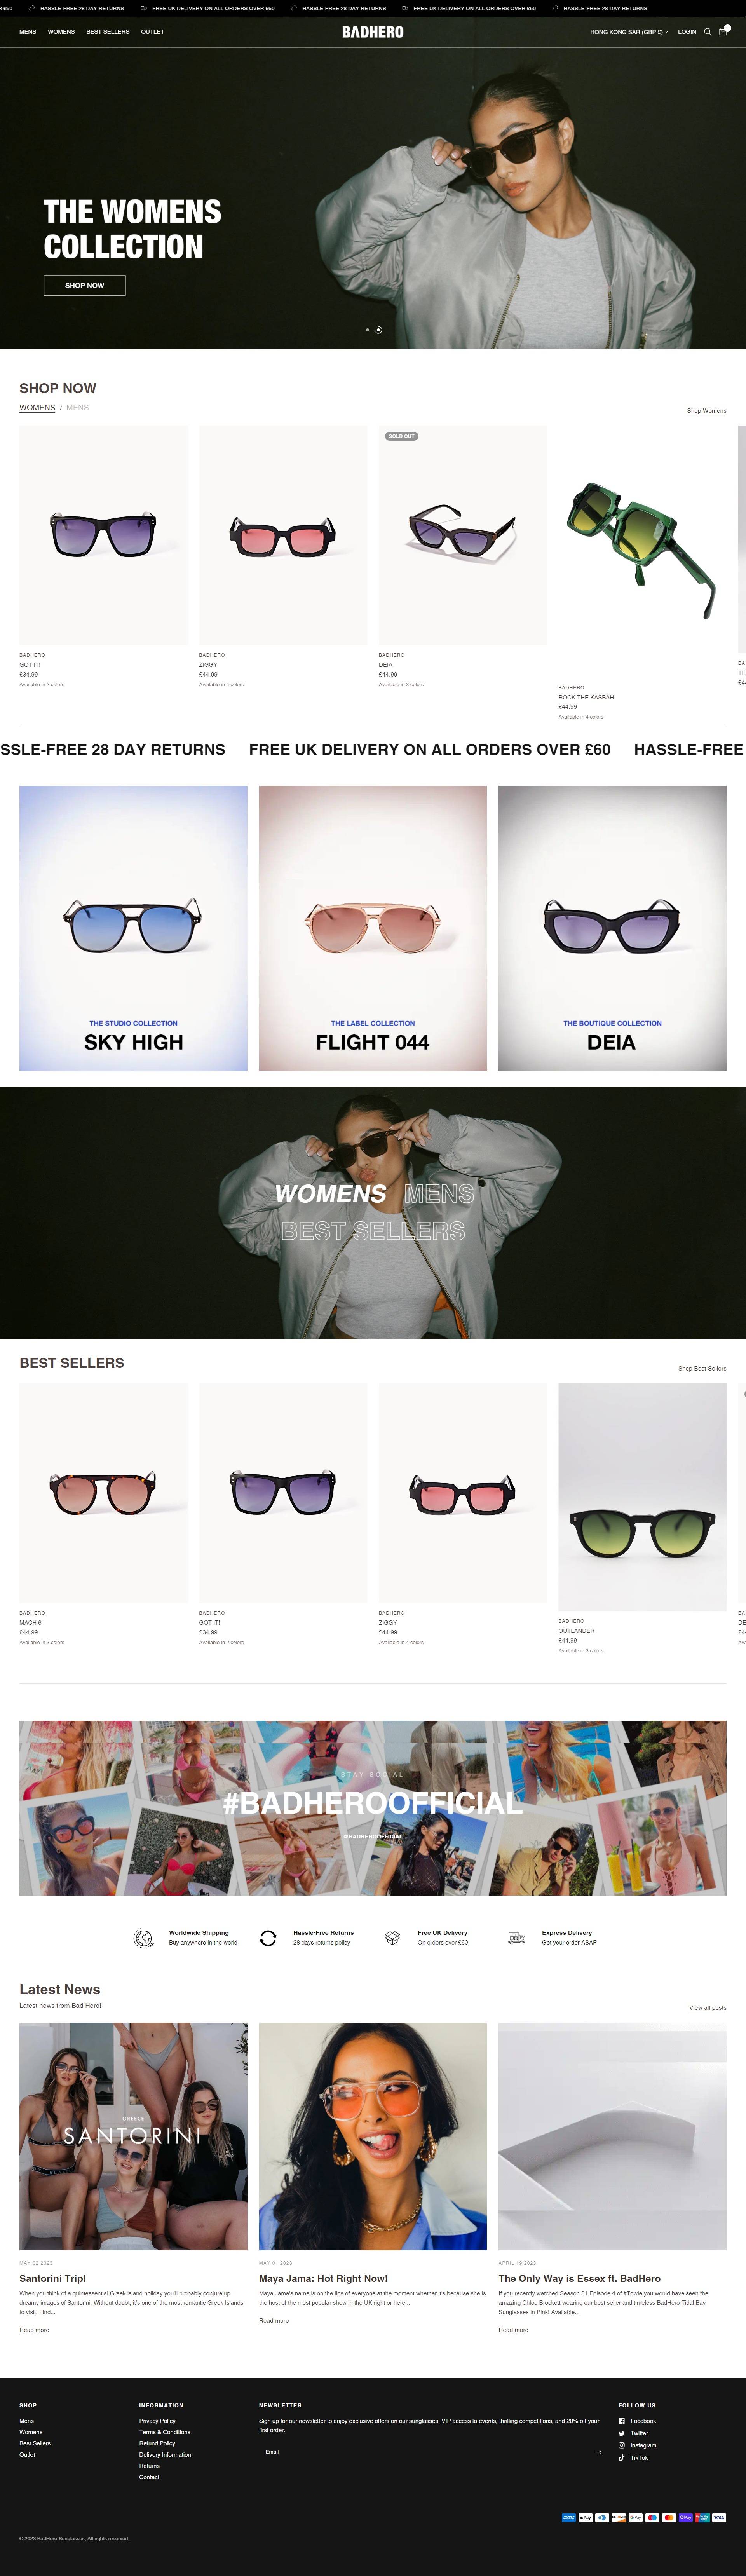 BadHero 英国时尚太阳镜品牌购物网站